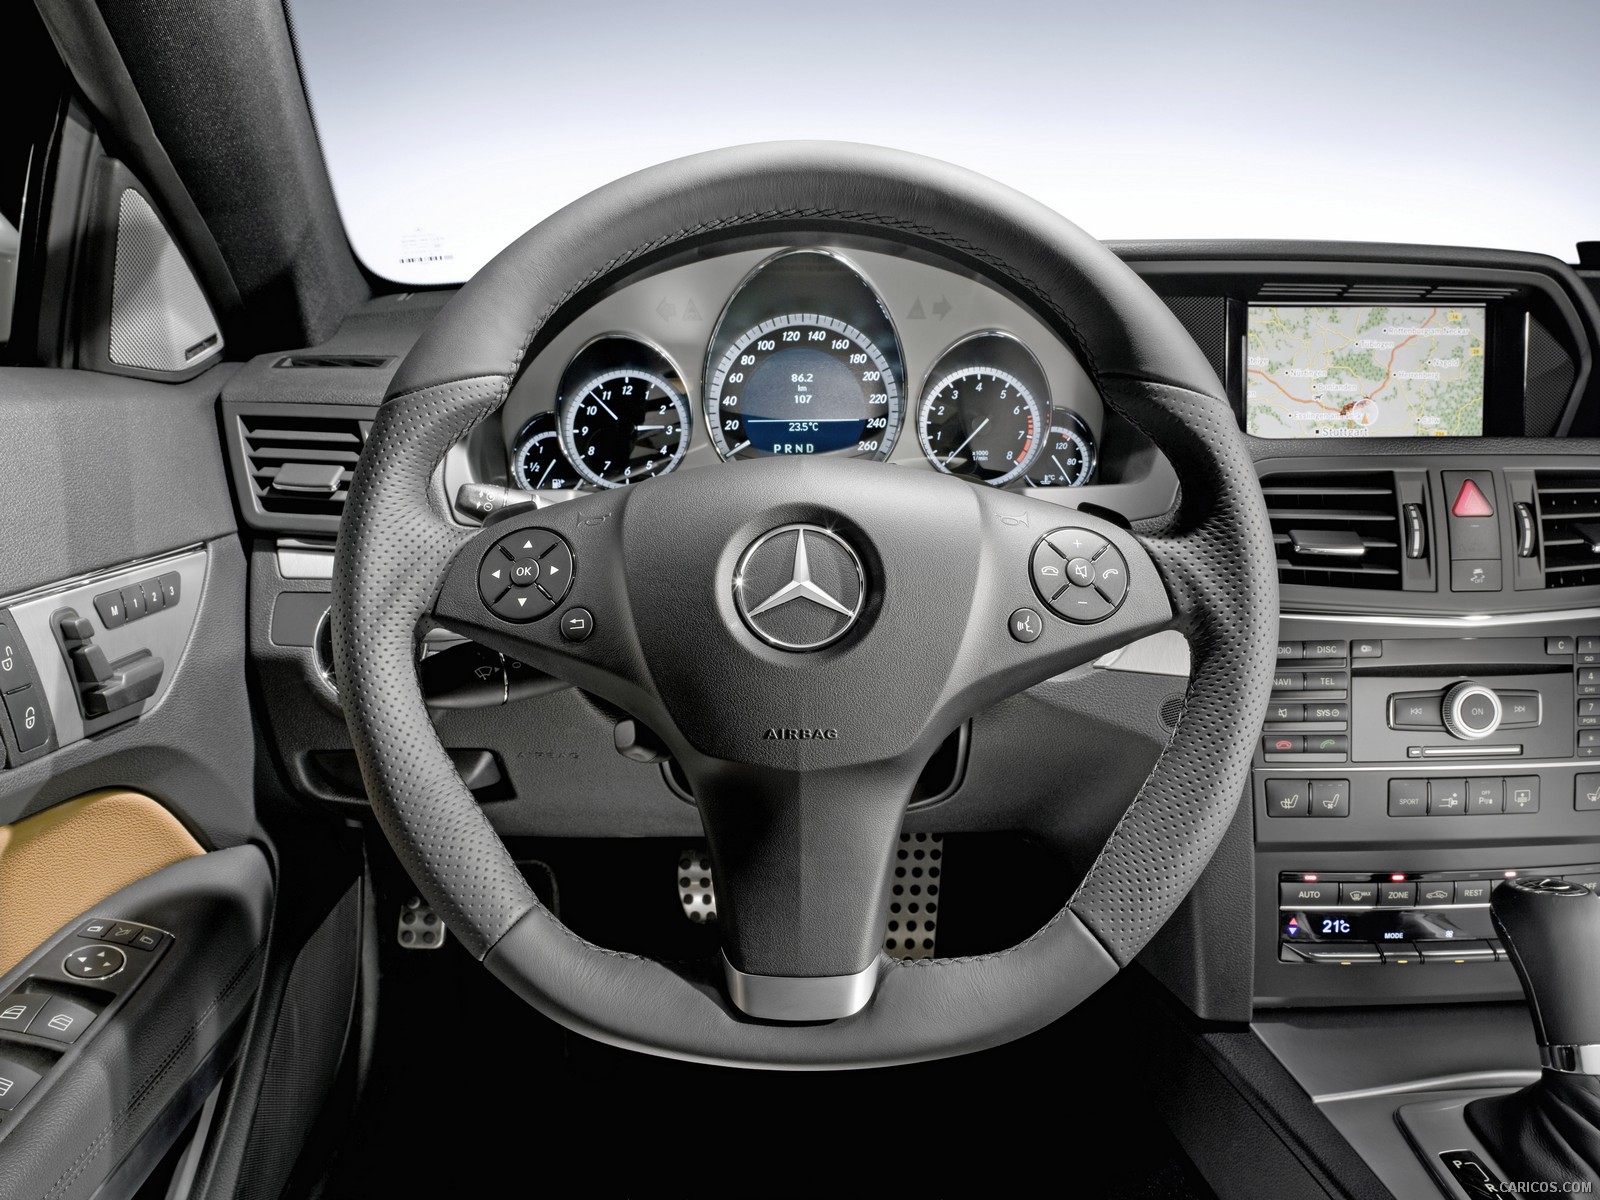 2010 Mercedes Benz E Class Coupe Interior Steering Wheel